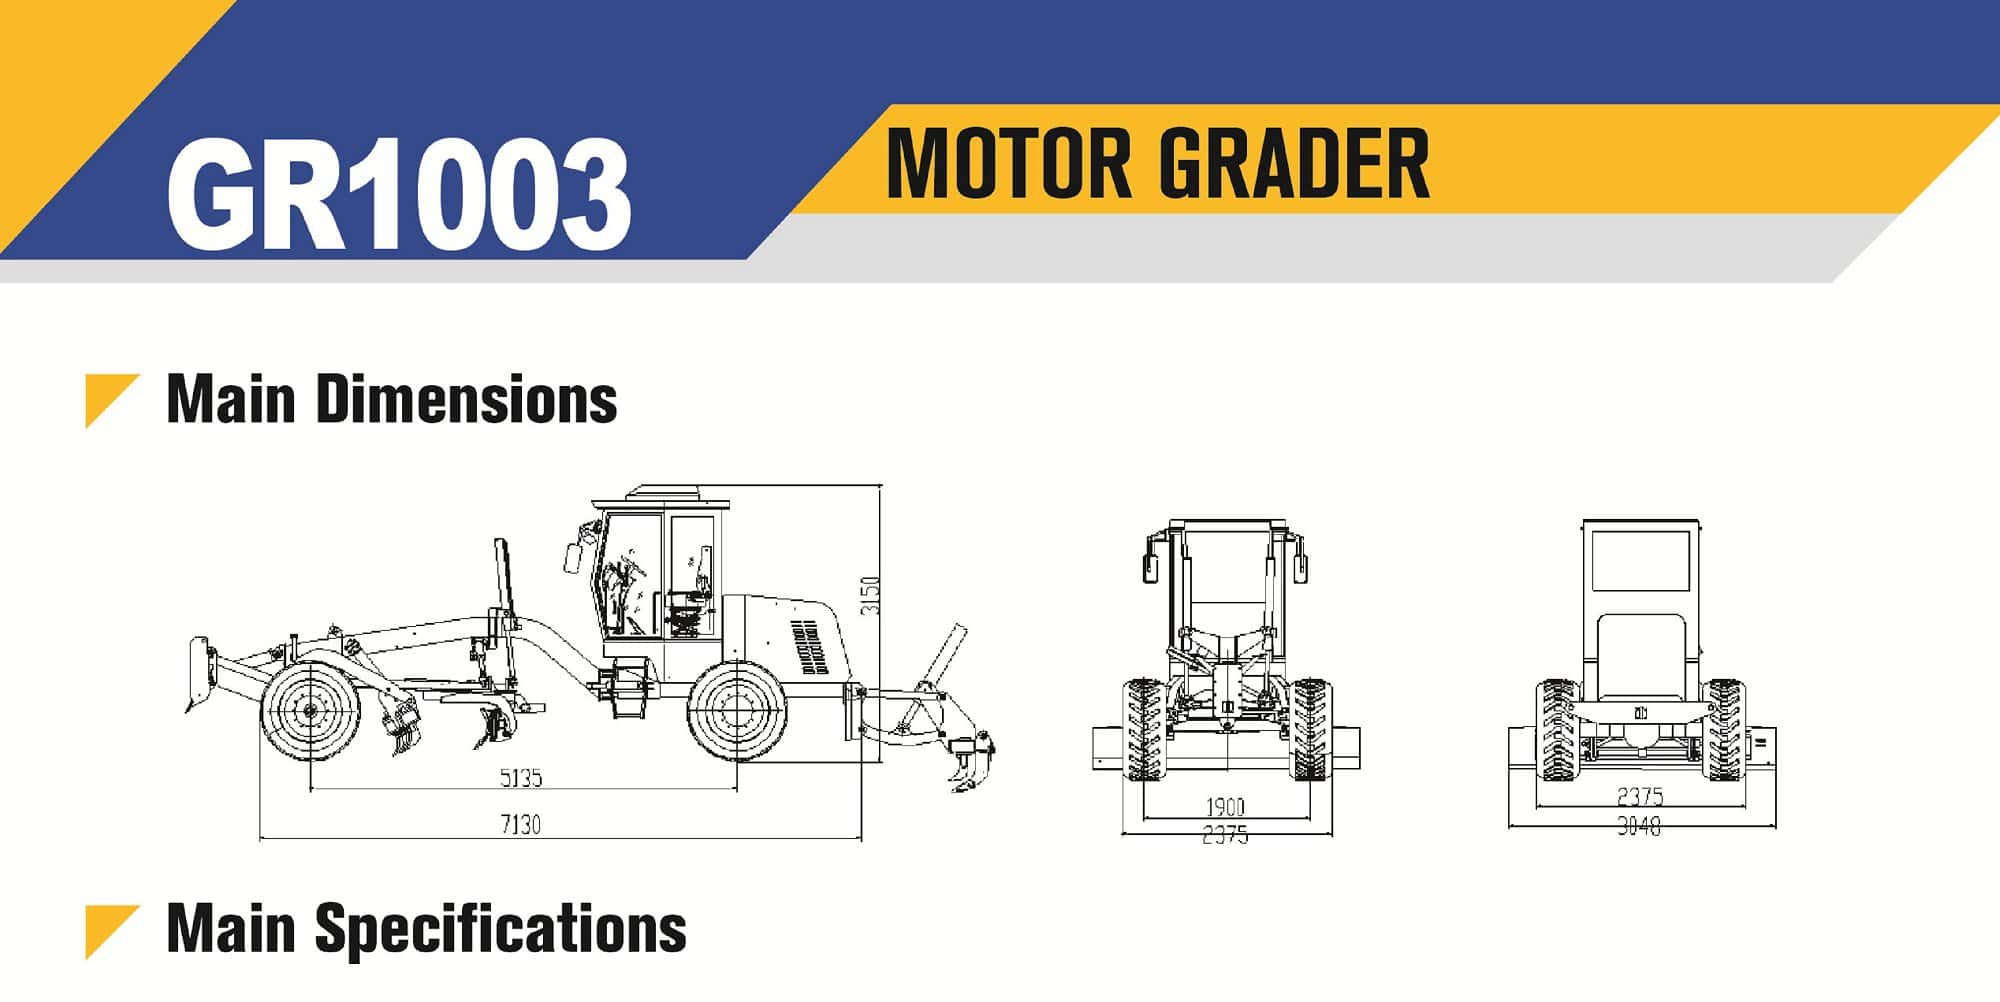 XCMG Official Motor Grader GR1003 For Sale